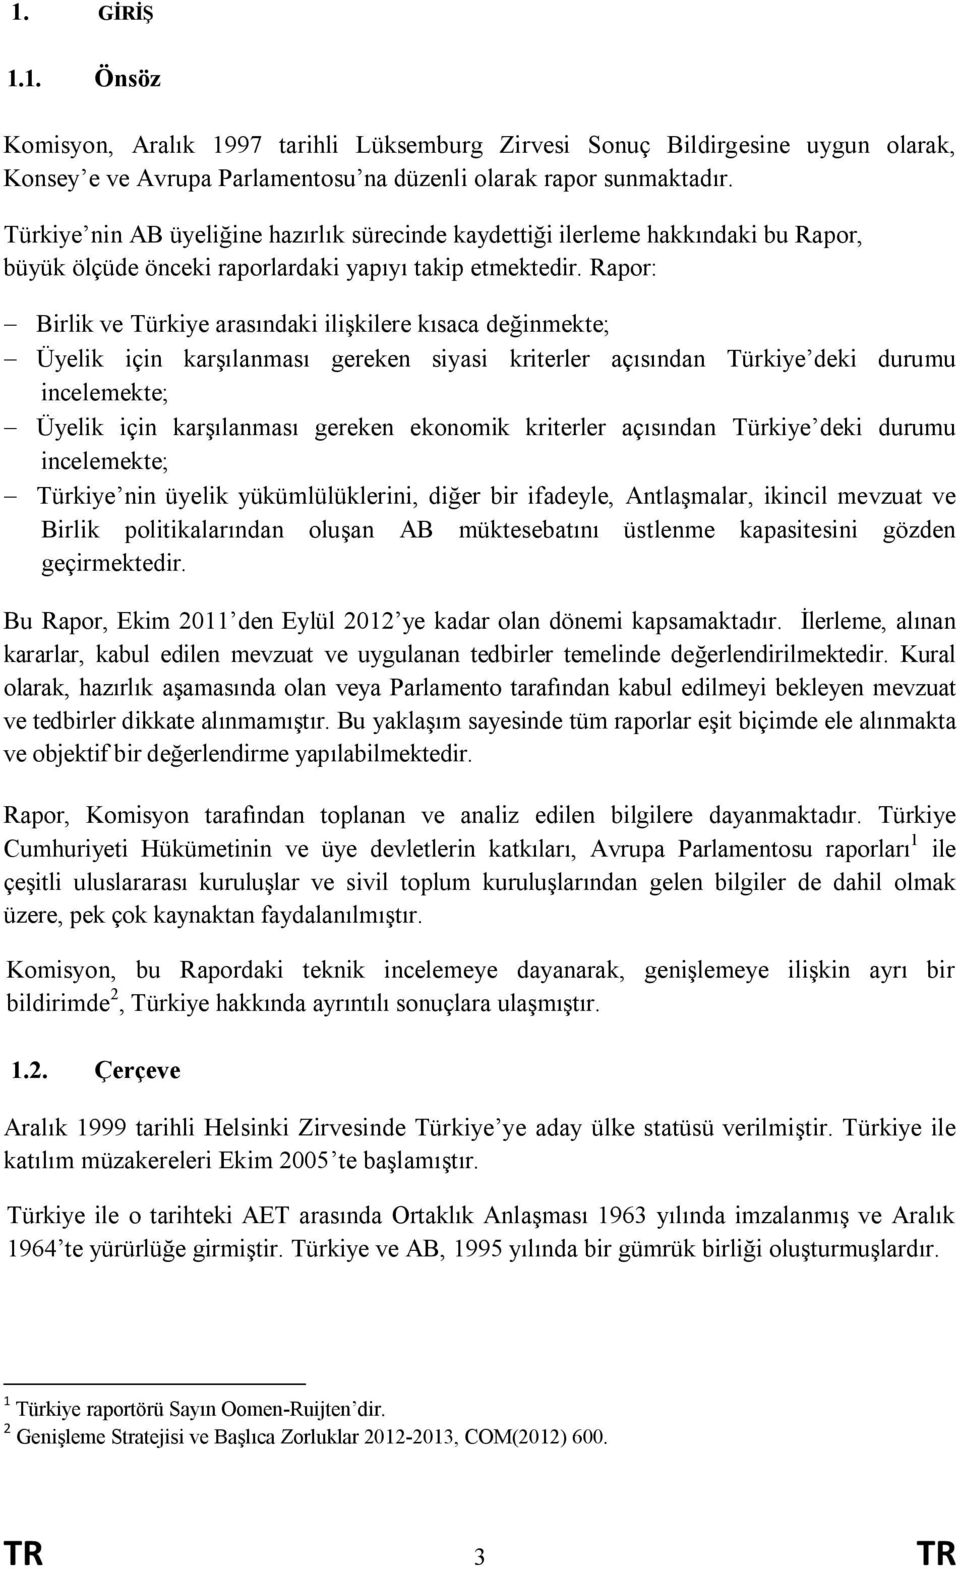 Rapor: - Birlik ve Türkiye arasındaki ilişkilere kısaca değinmekte; - Üyelik için karşılanması gereken siyasi kriterler açısından Türkiye deki durumu incelemekte; - Üyelik için karşılanması gereken